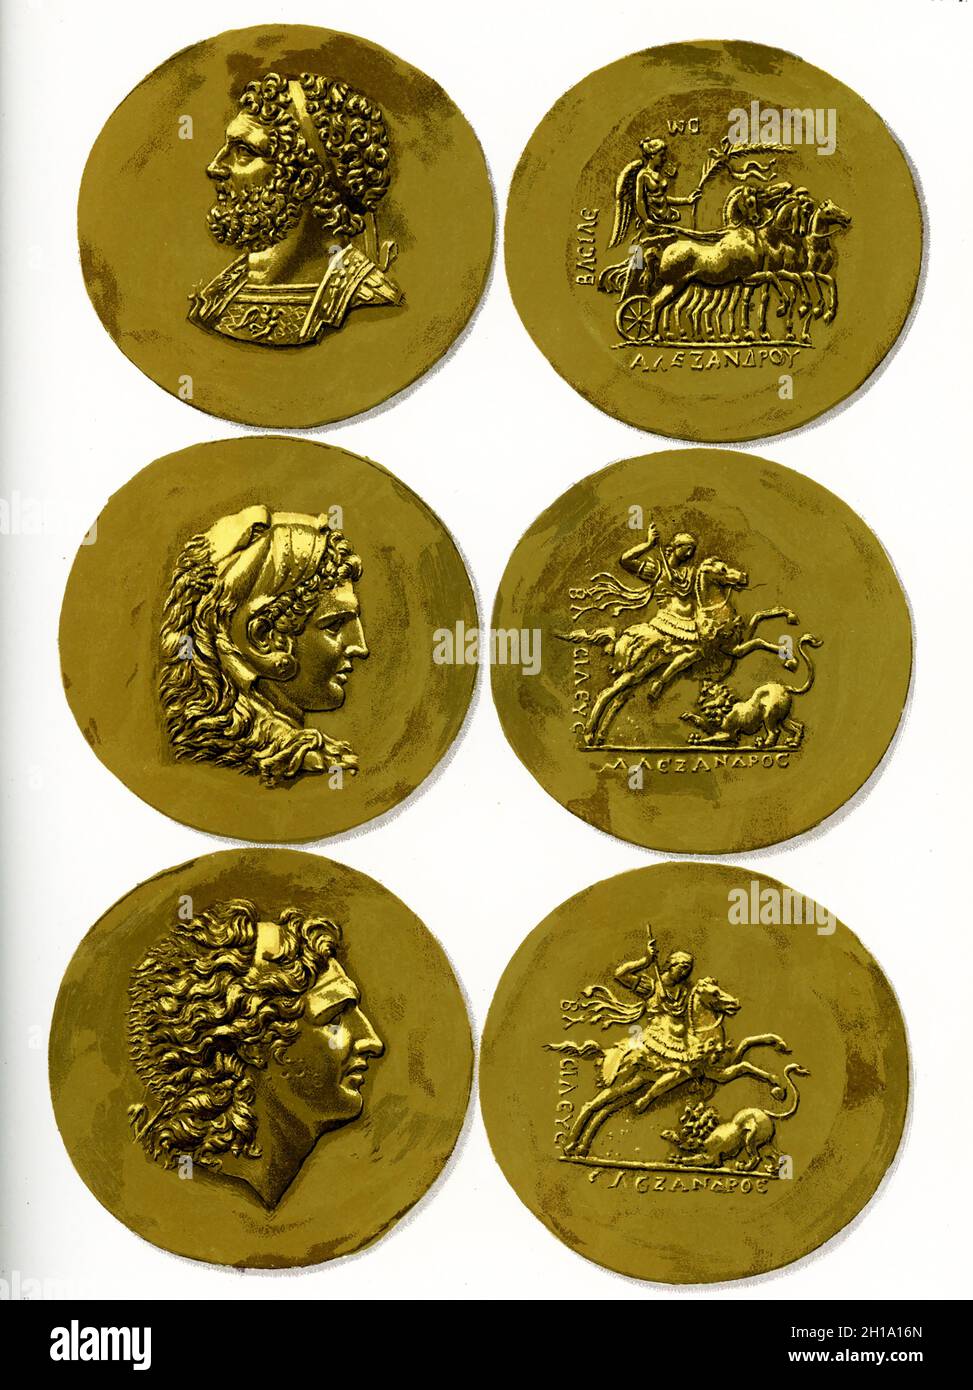 Die Bildunterschrift lautet: Schatz aus Tarsus. Goldmünzen von Alexander, Philipp II. Und Herkules, die während der Herrschaft von Alexander Severus (222-235 n. Chr.) graviert wurden. Stockfoto